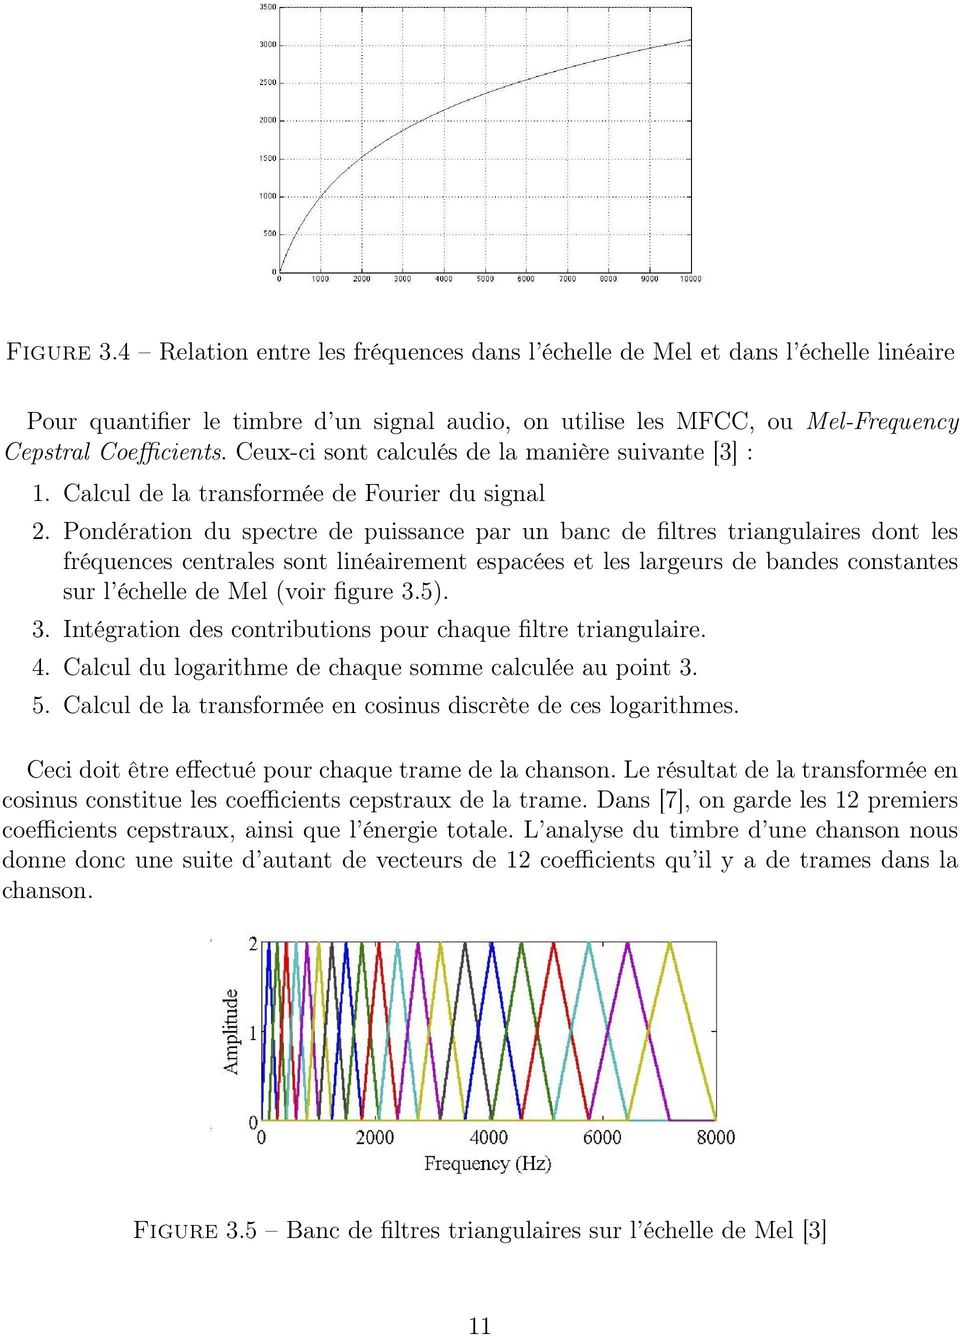 Pondération du spectre de puissance par un banc de filtres triangulaires dont les fréquences centrales sont linéairement espacées et les largeurs de bandes constantes sur l échelle de Mel (voir